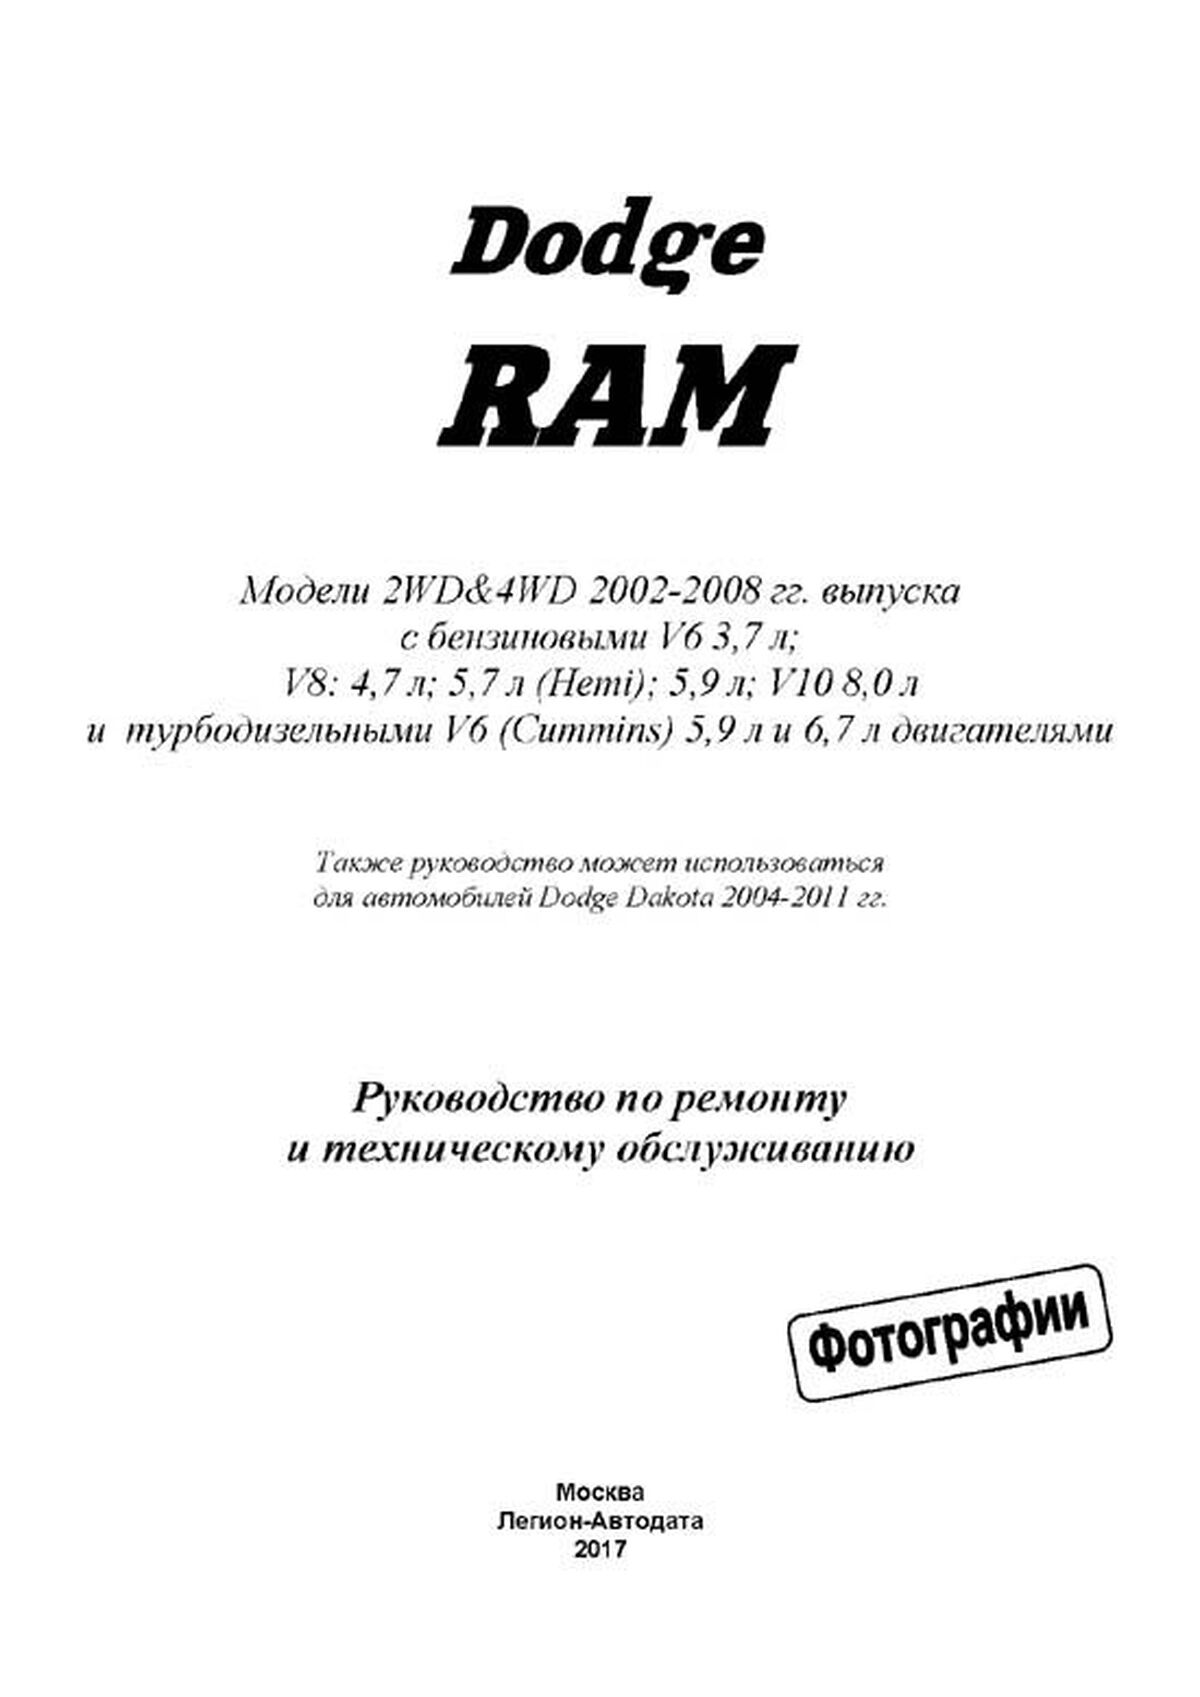 Книга: DODGE RAM (б , д) 2002-2008 г.в., рем., экспл., то | Легион-Aвтодата